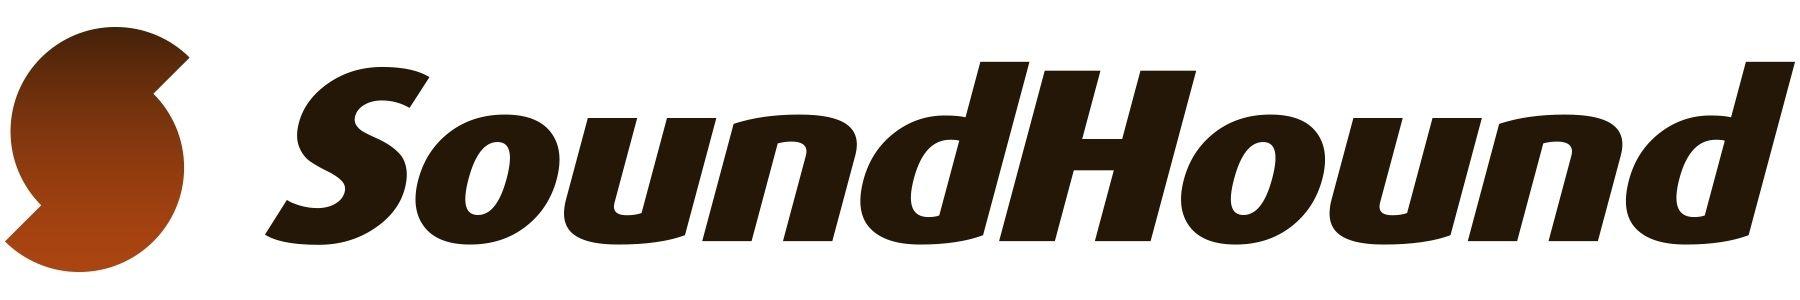 SoundHound Logo - SoundHound Inc. Introduces Hound, Unprecedented Speech Recognition +